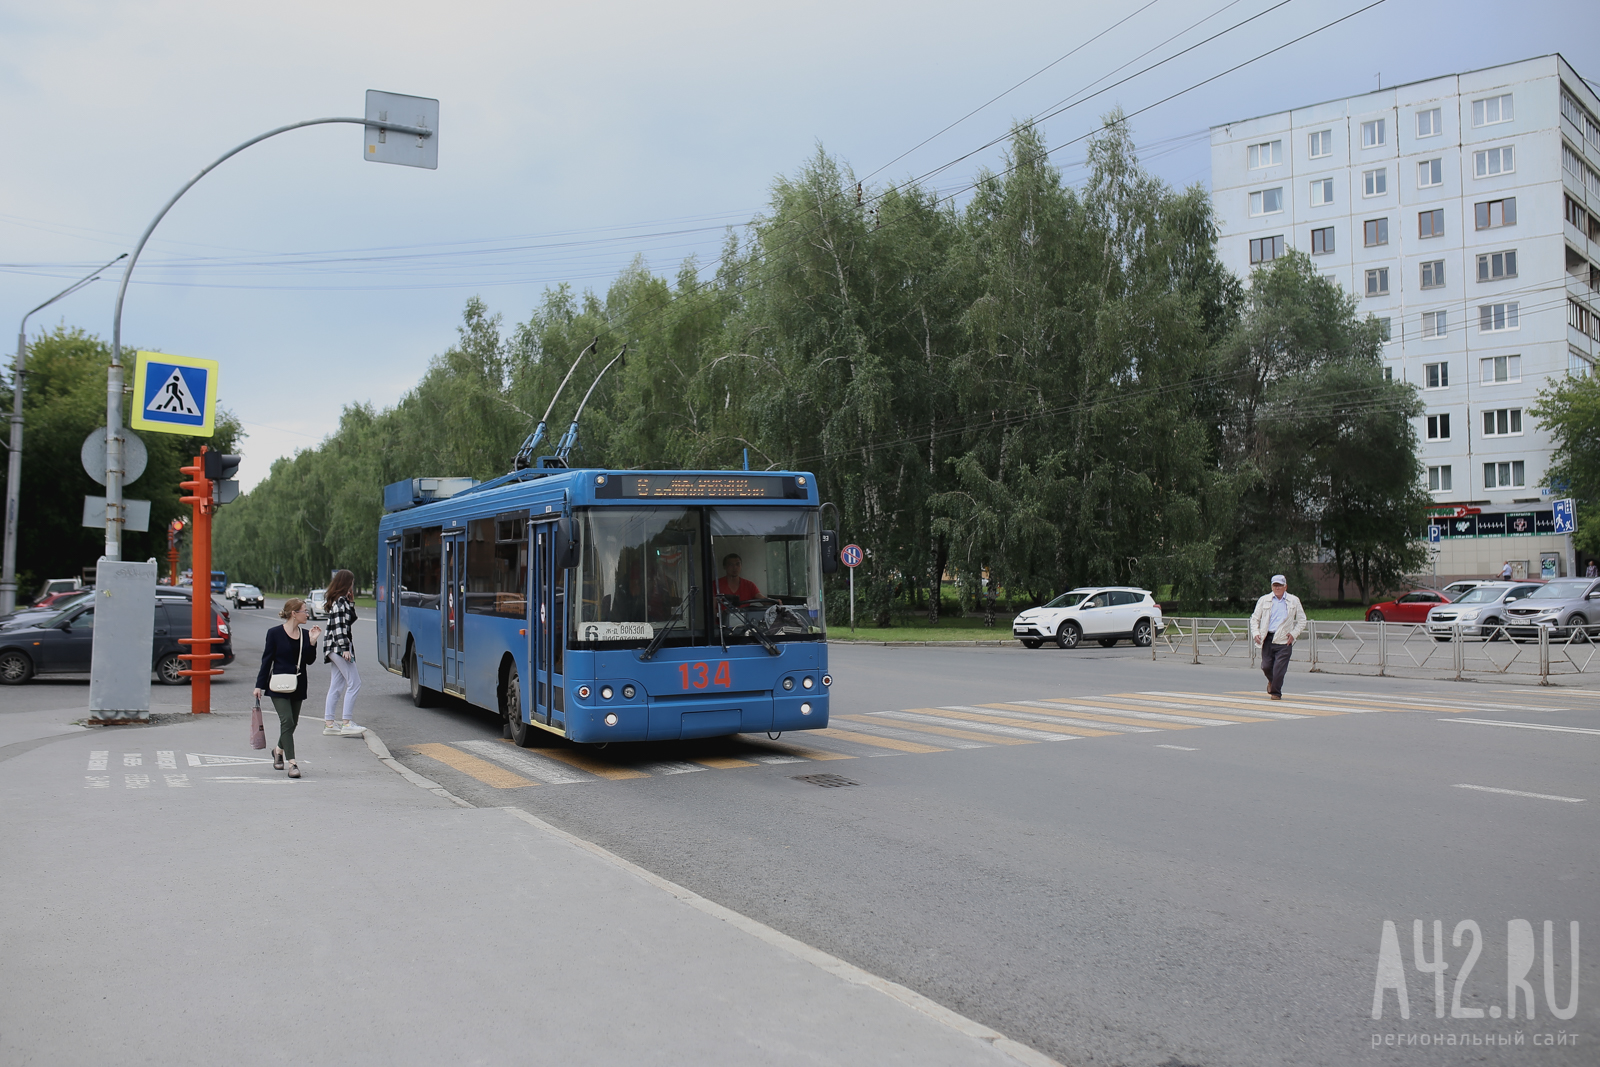 Тонированные стёкла и видеонаблюдение: к середине августа в Кемерово поставят 10 новых троллейбусов с автономным ходом